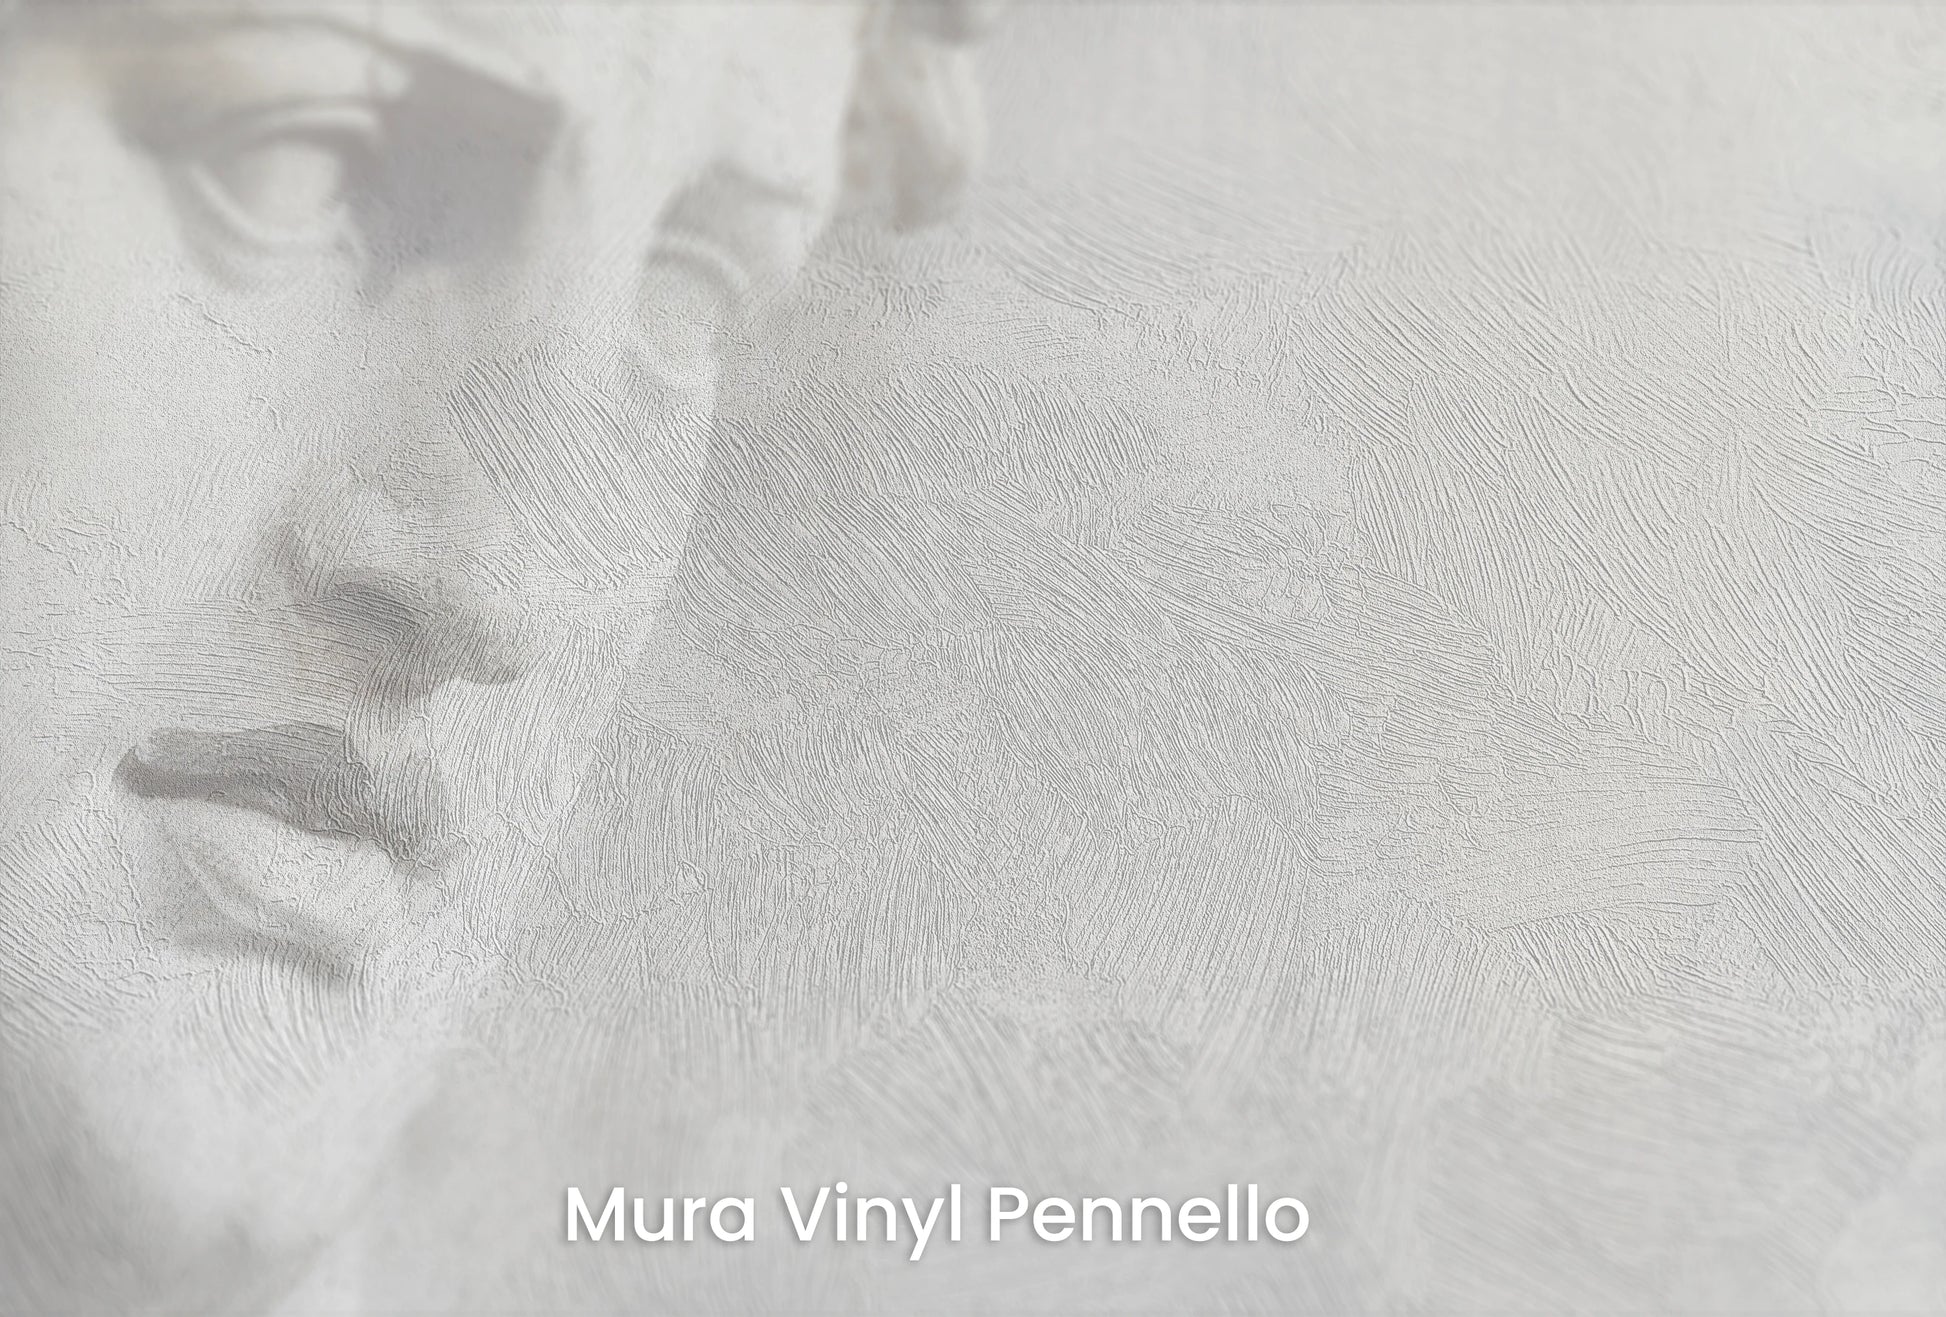 Zbliżenie na artystyczną fototapetę o nazwie Athena's Wisdom na podłożu Mura Vinyl Pennello - faktura pociągnięć pędzla malarskiego.